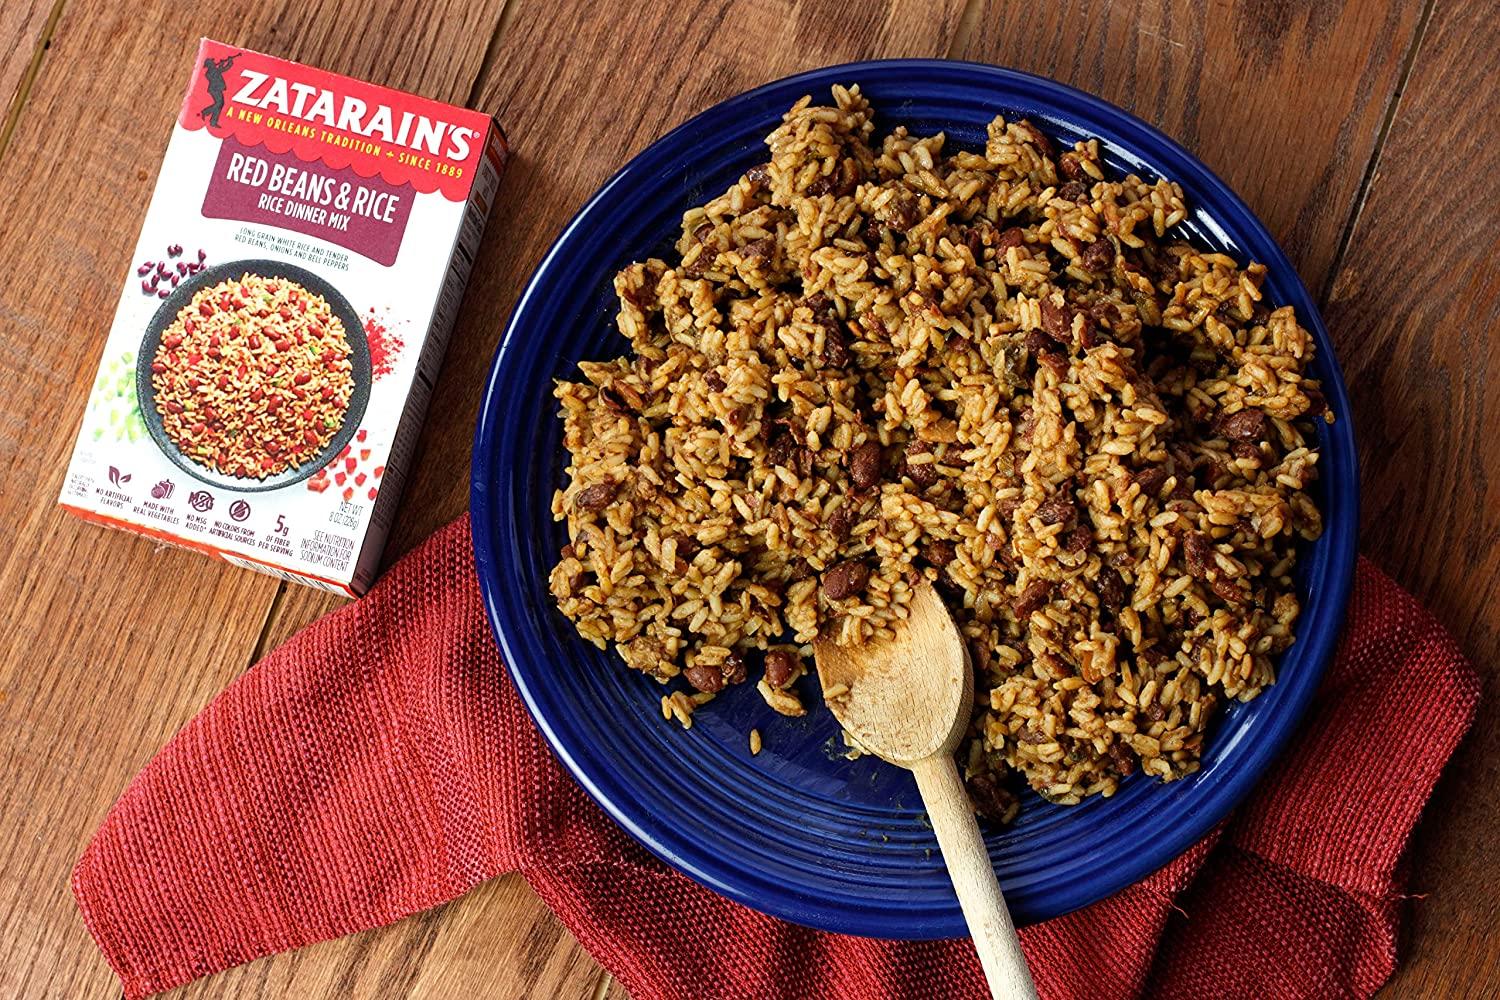 Zatarain's Red Beans & Rice Mix